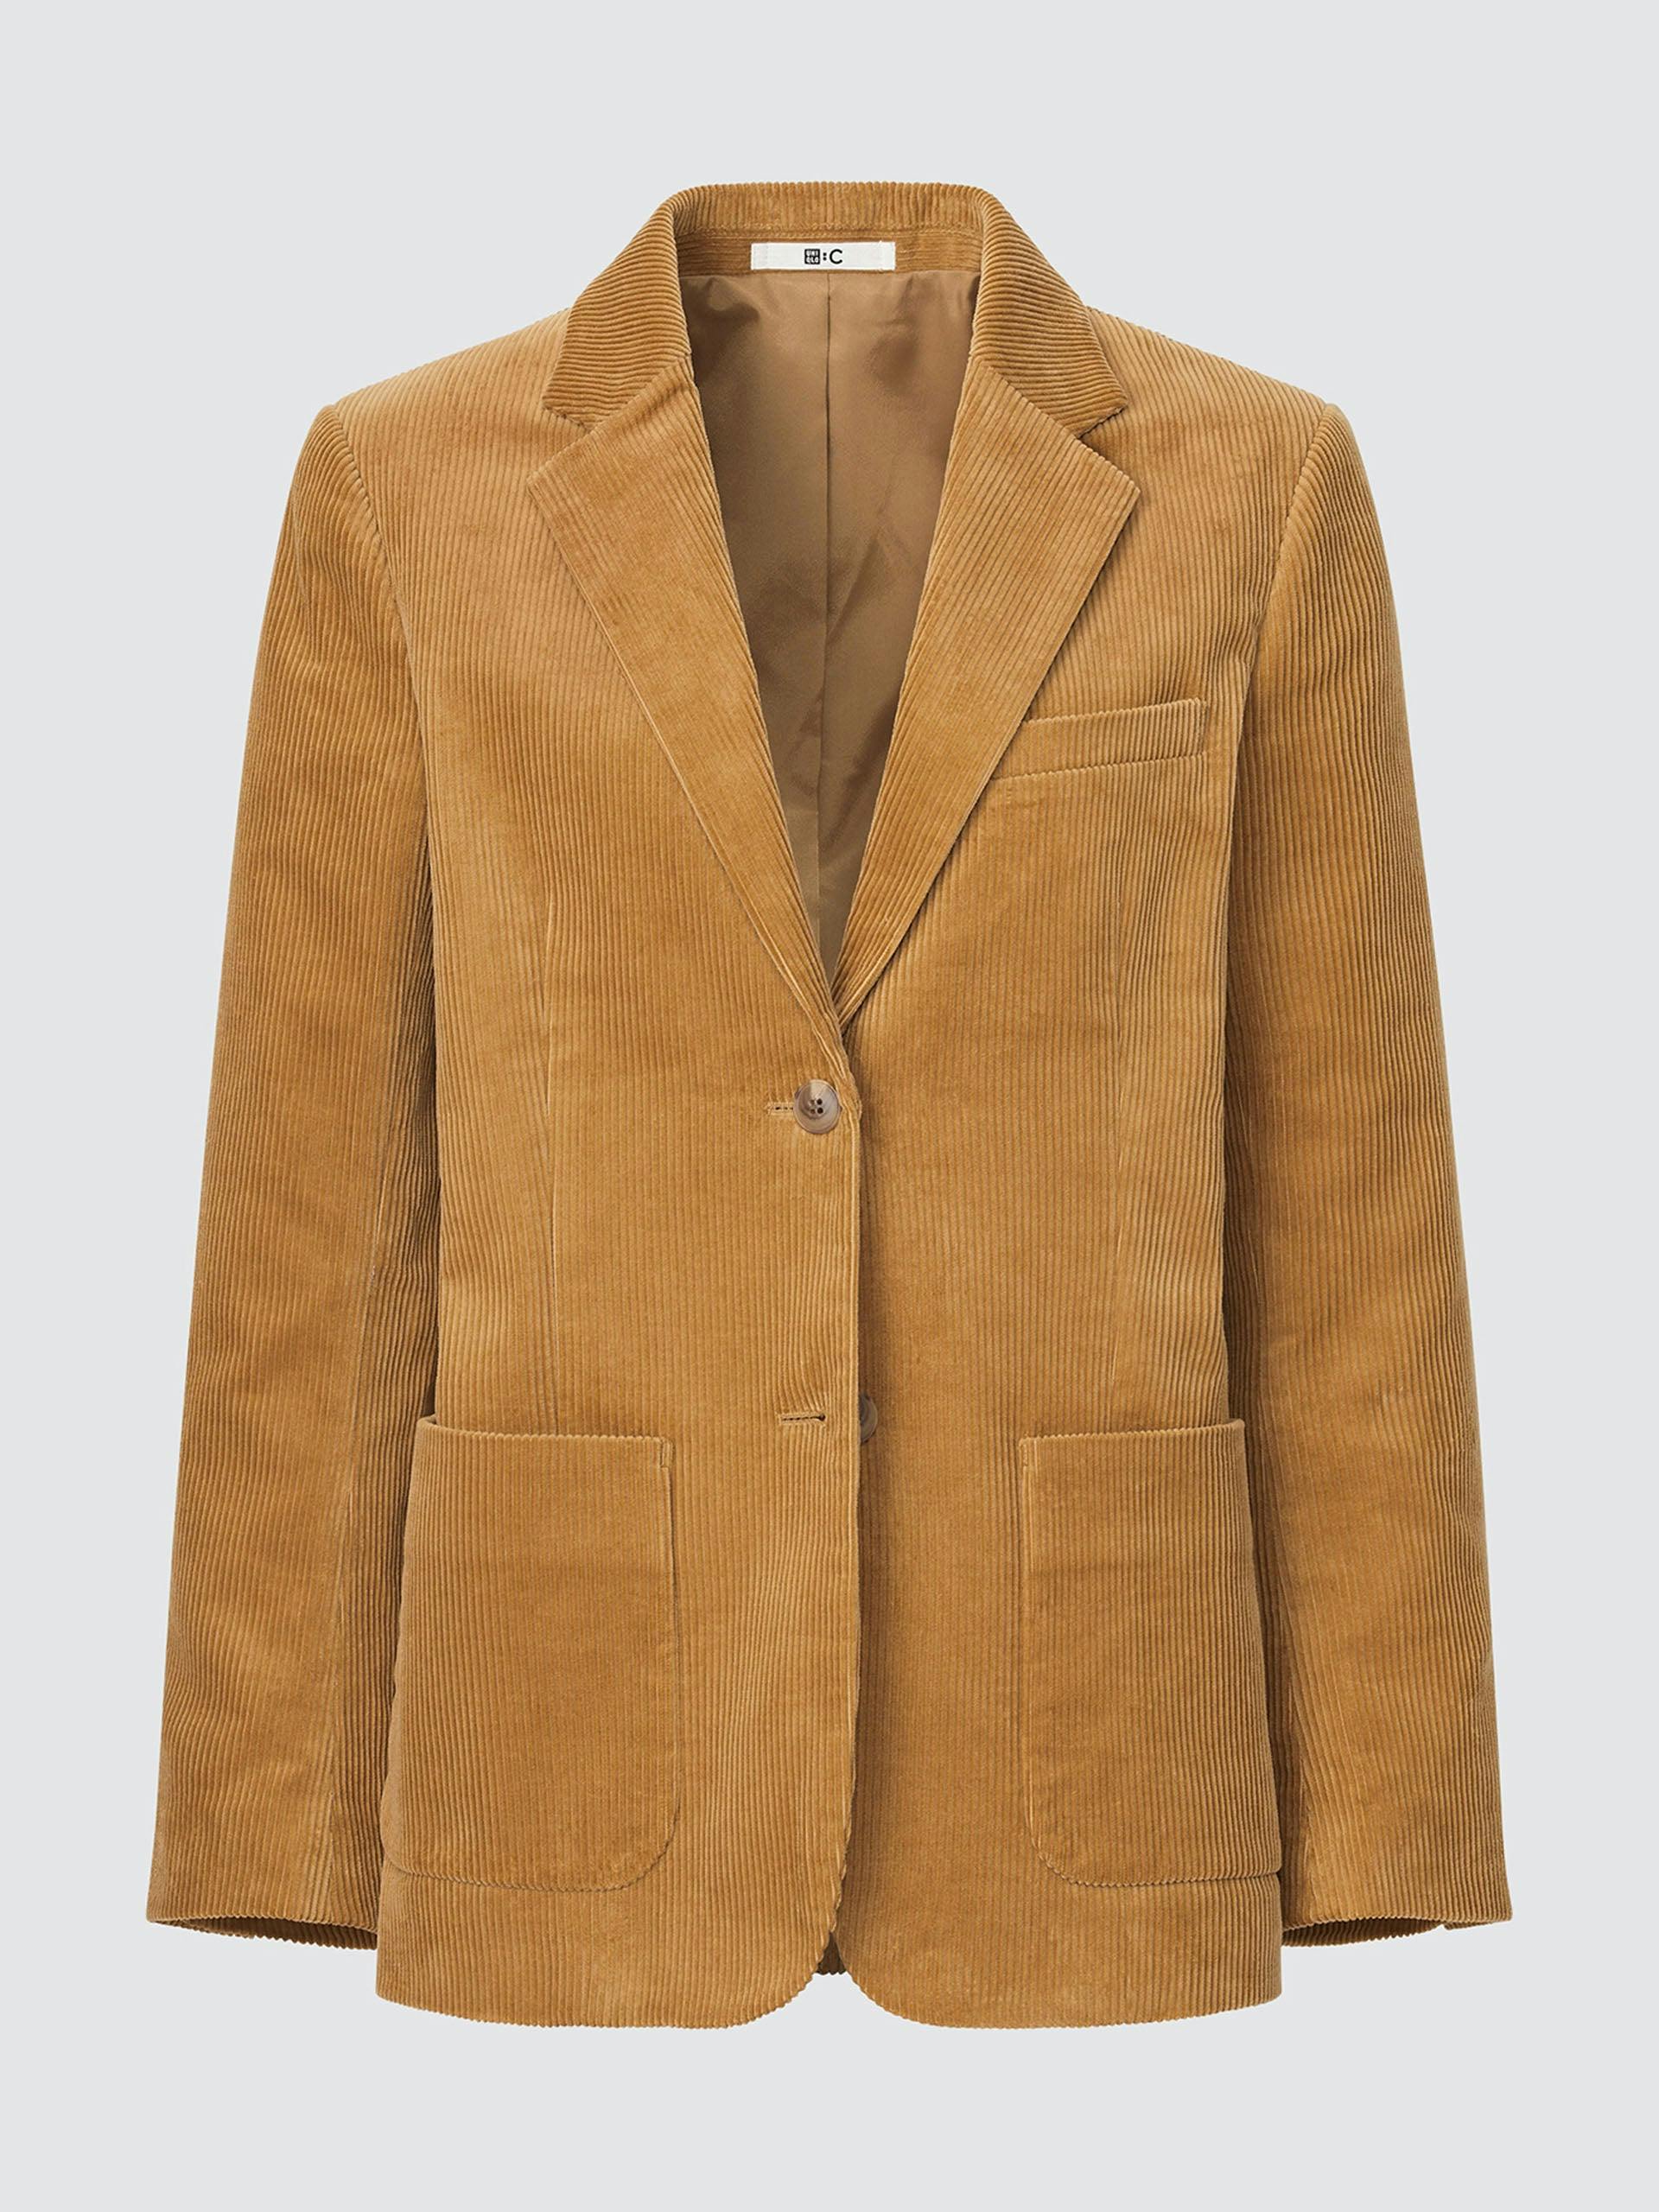 Corduroy blazer jacket